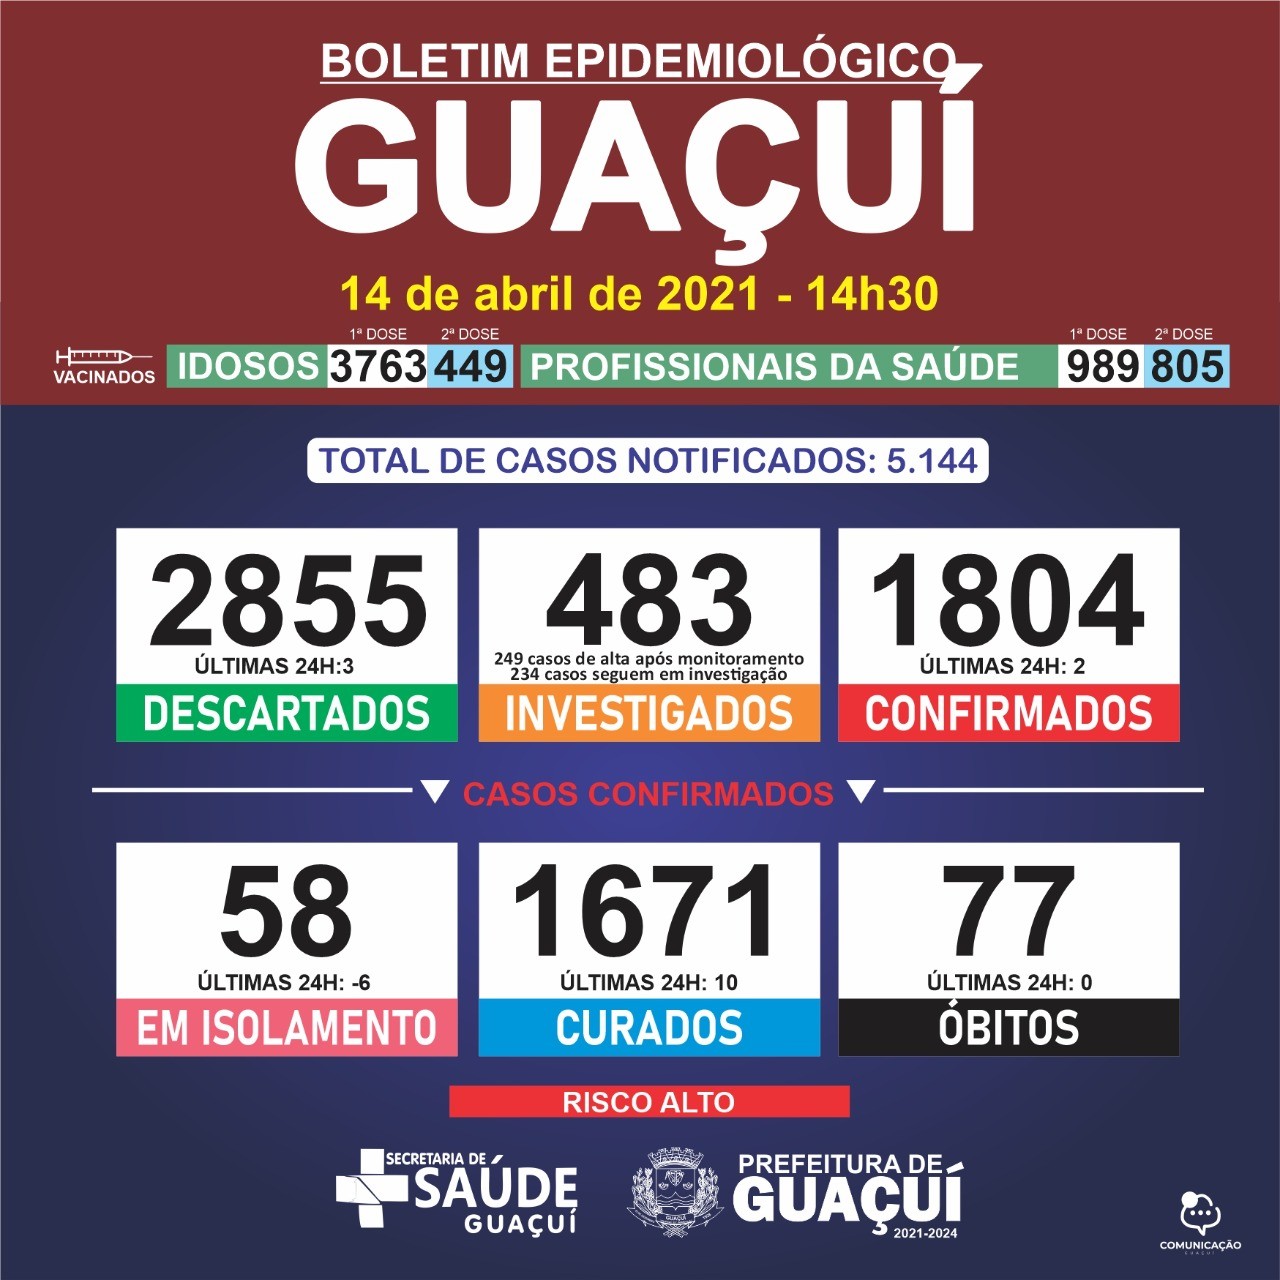 Boletim Epidemiológico 14/04/21: Guaçuí registra 10 curados e 2 casos confirmados nas últimas 24 horas